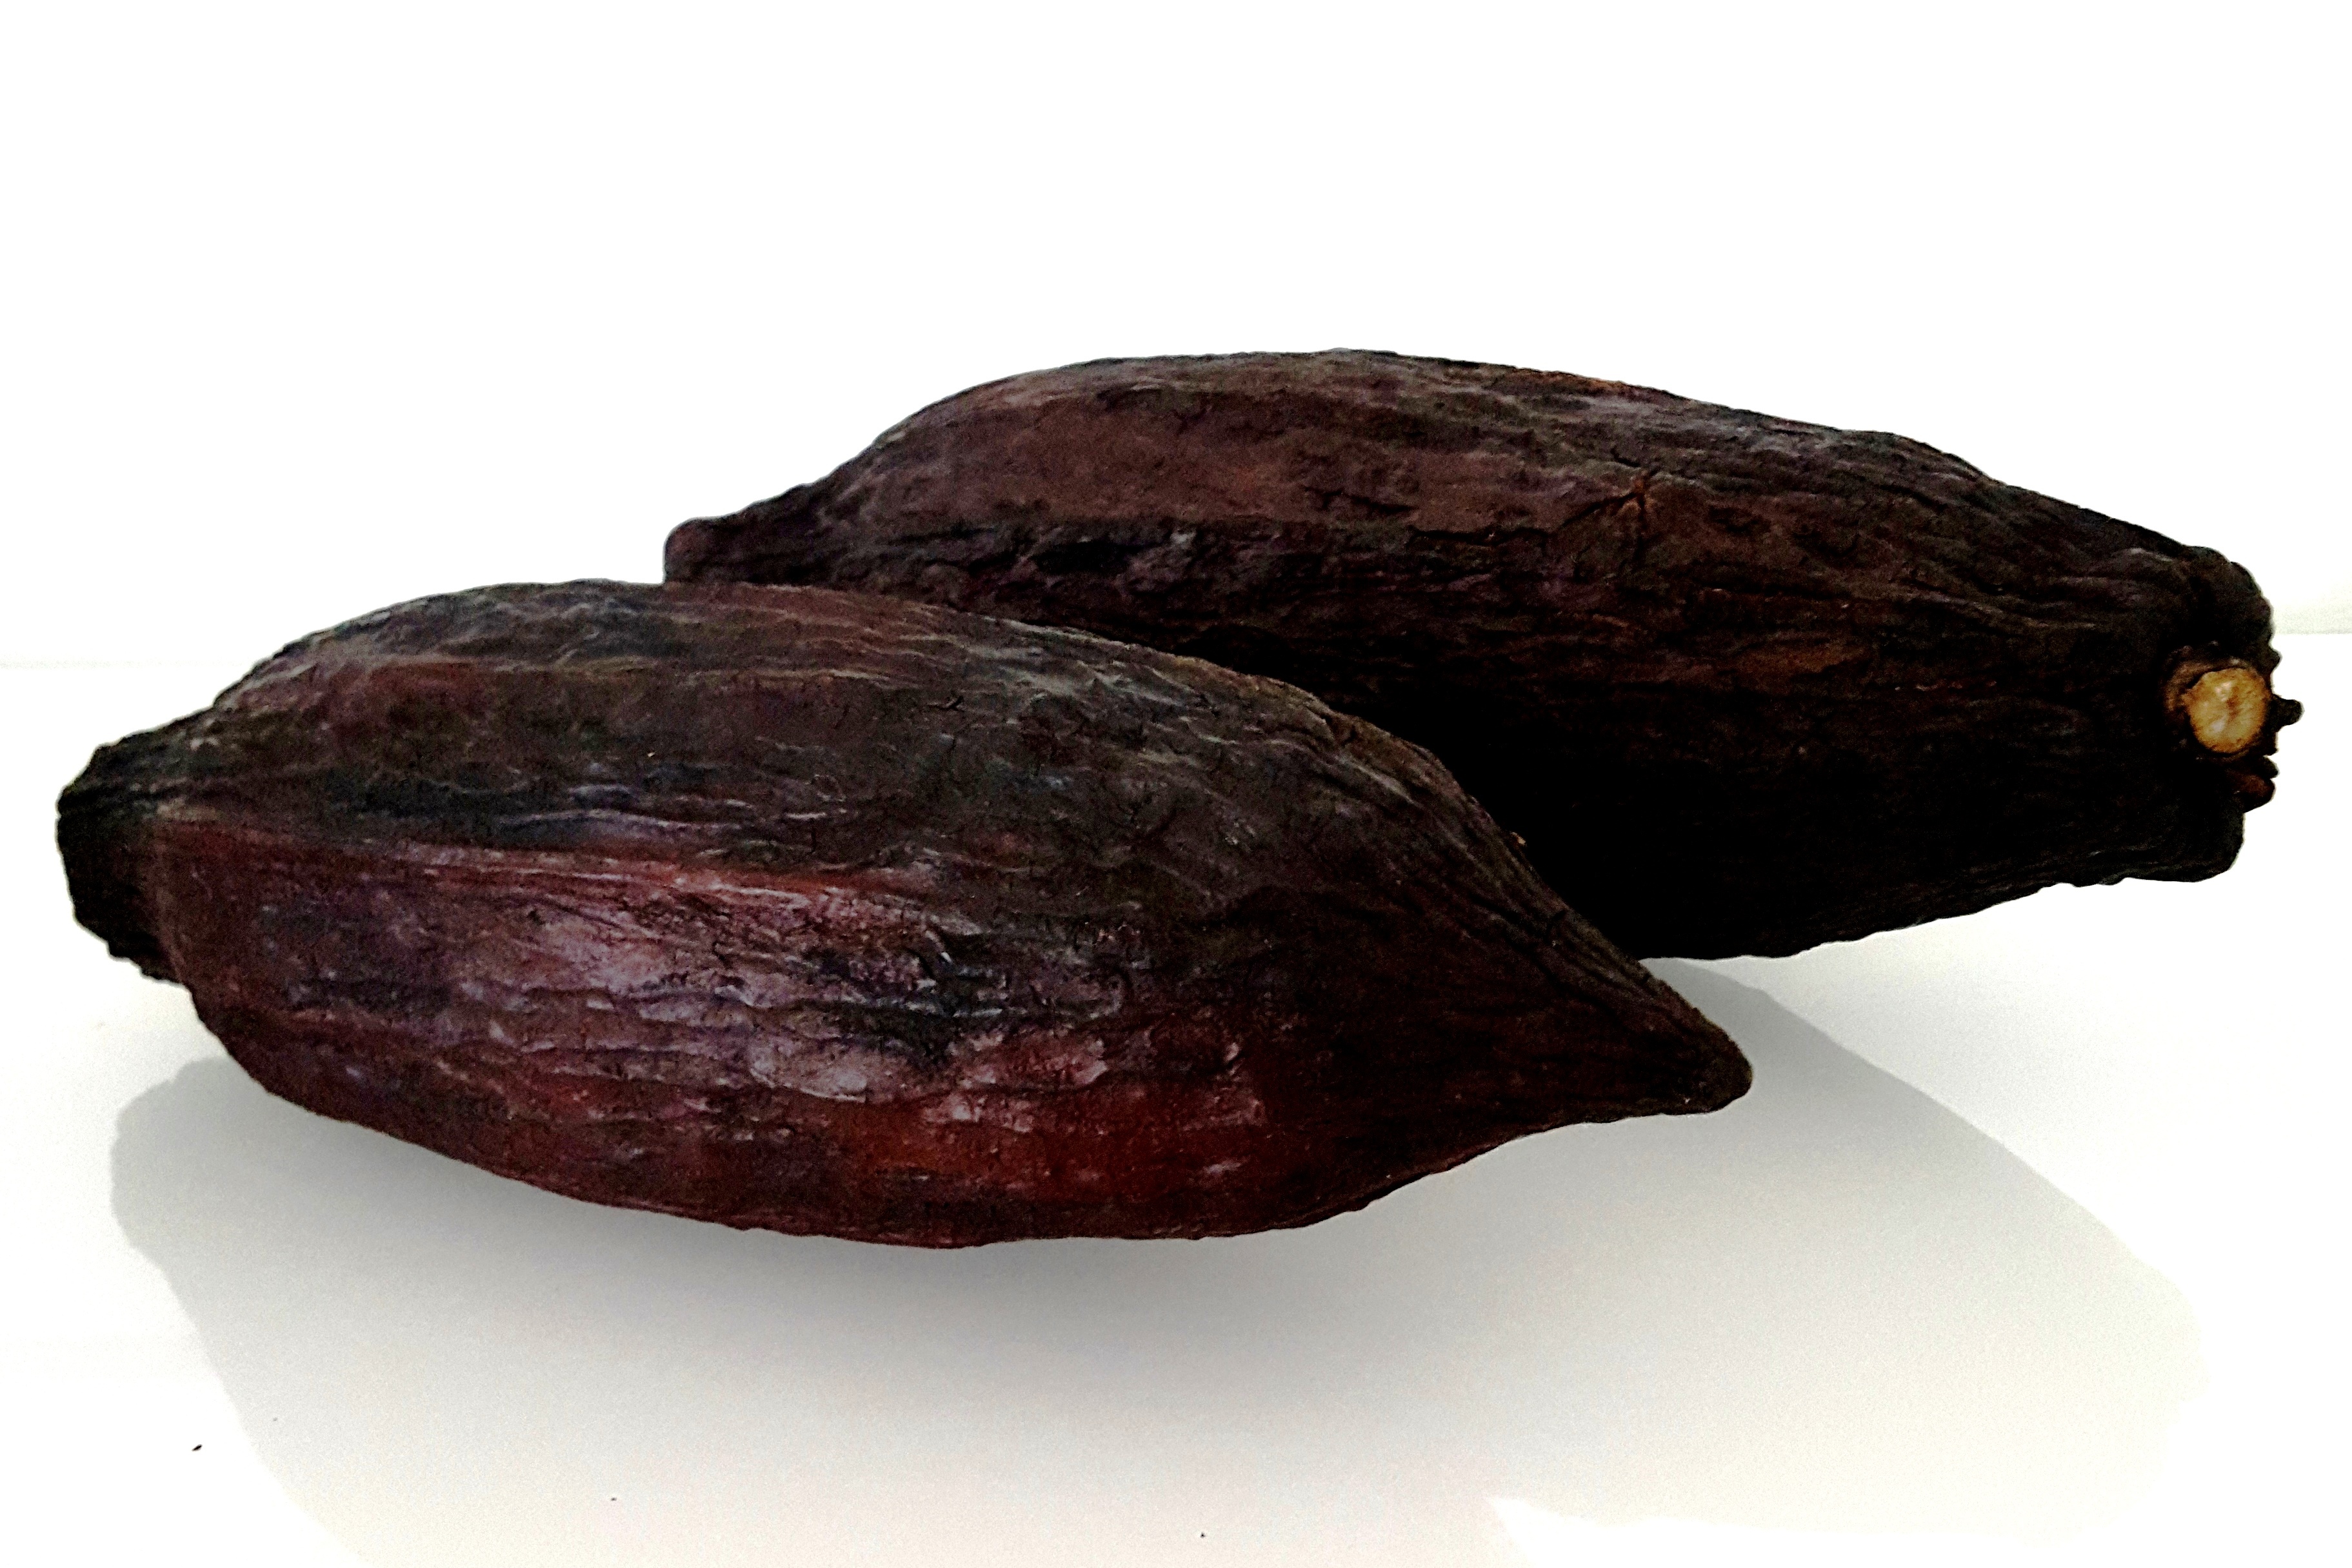 KakaoschotenRiesenschoten2er.jpeg